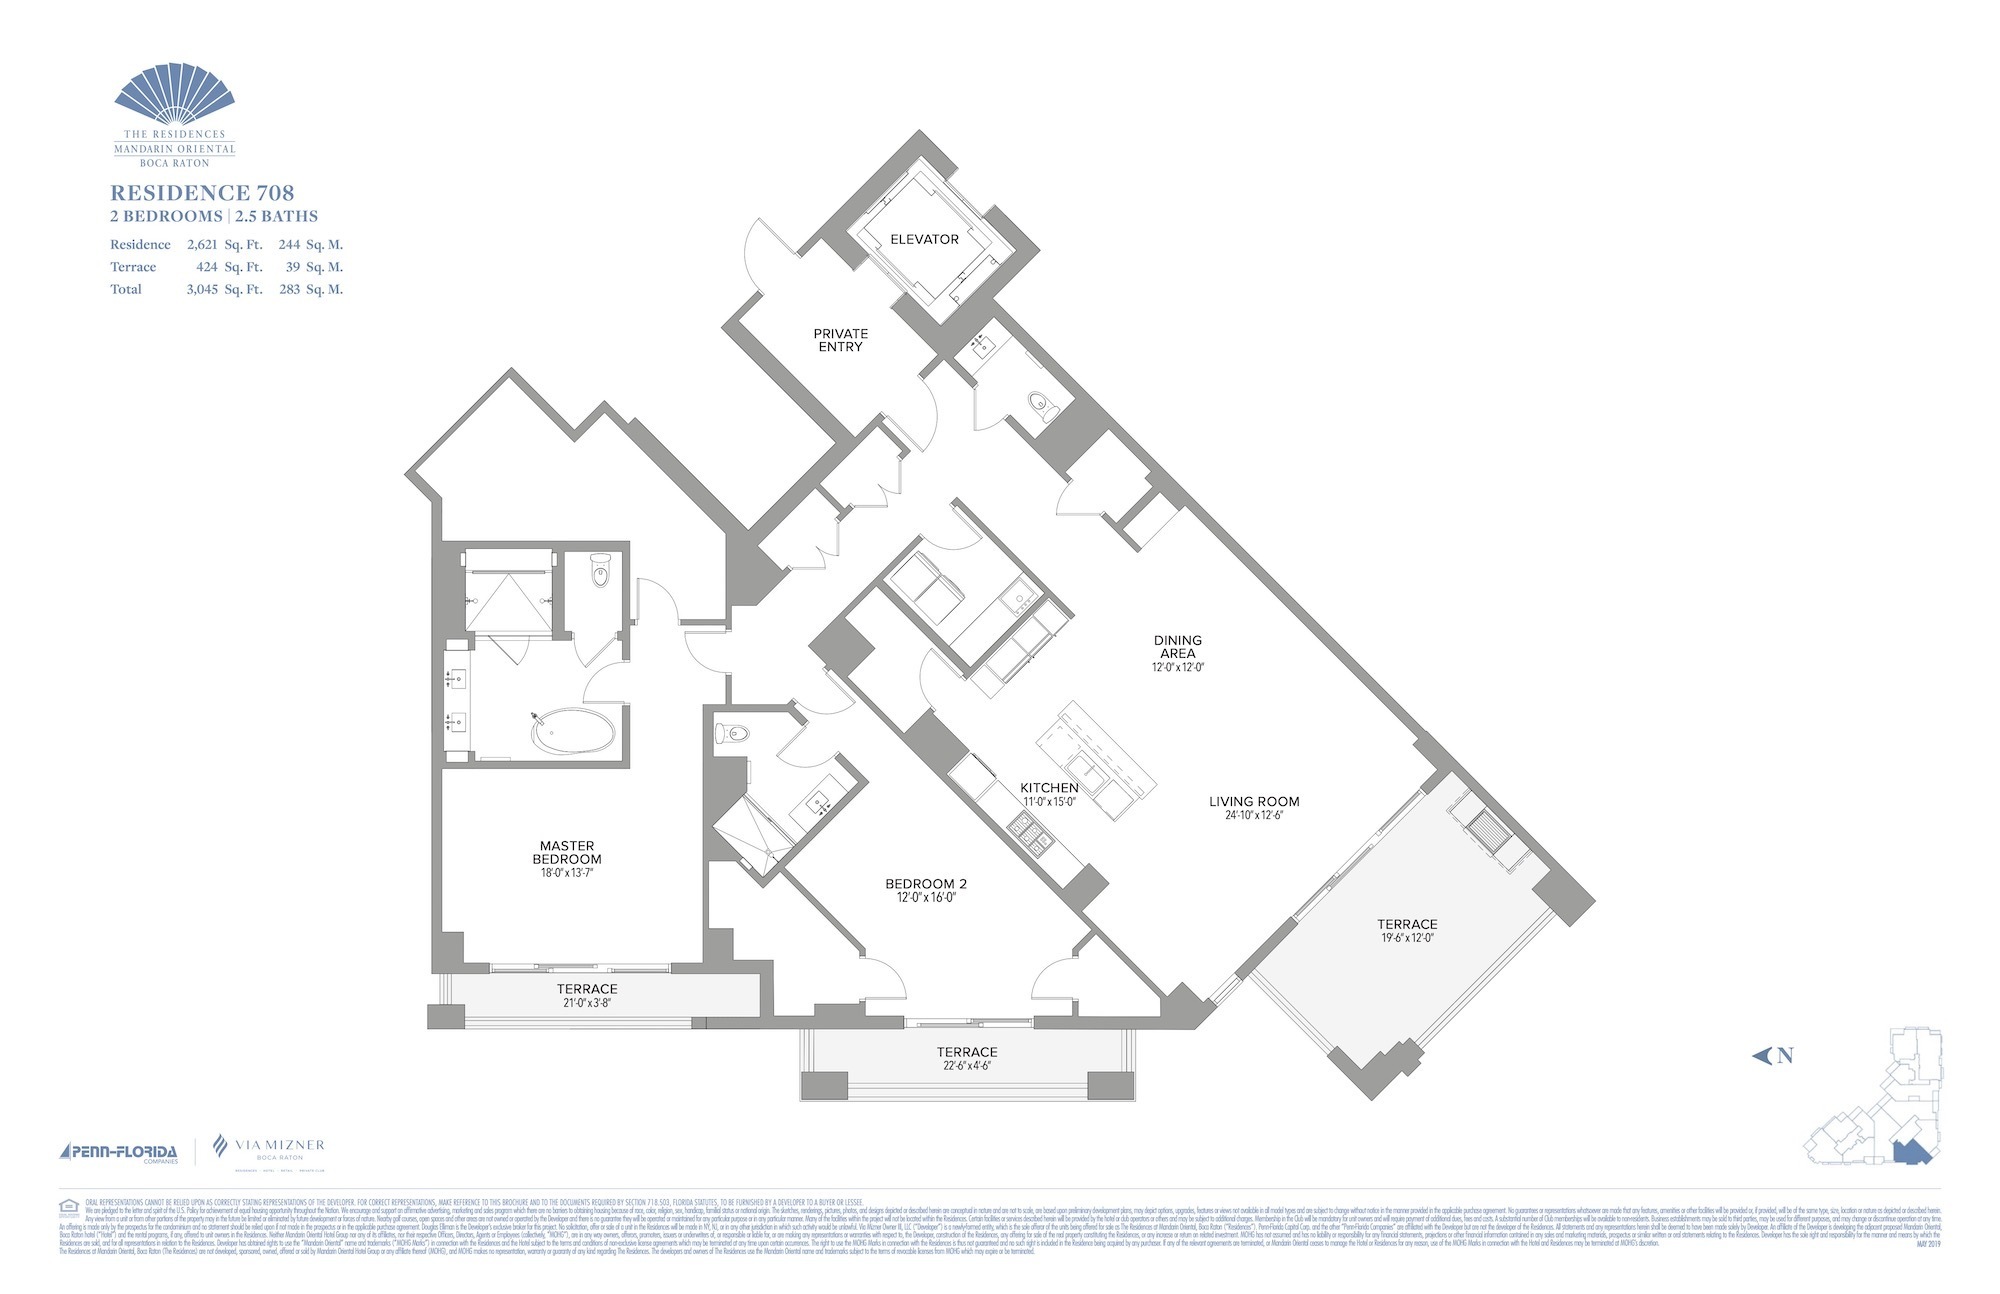 Floor Plan for Residence at Mandarin Oriental Floorplans, Residence 708